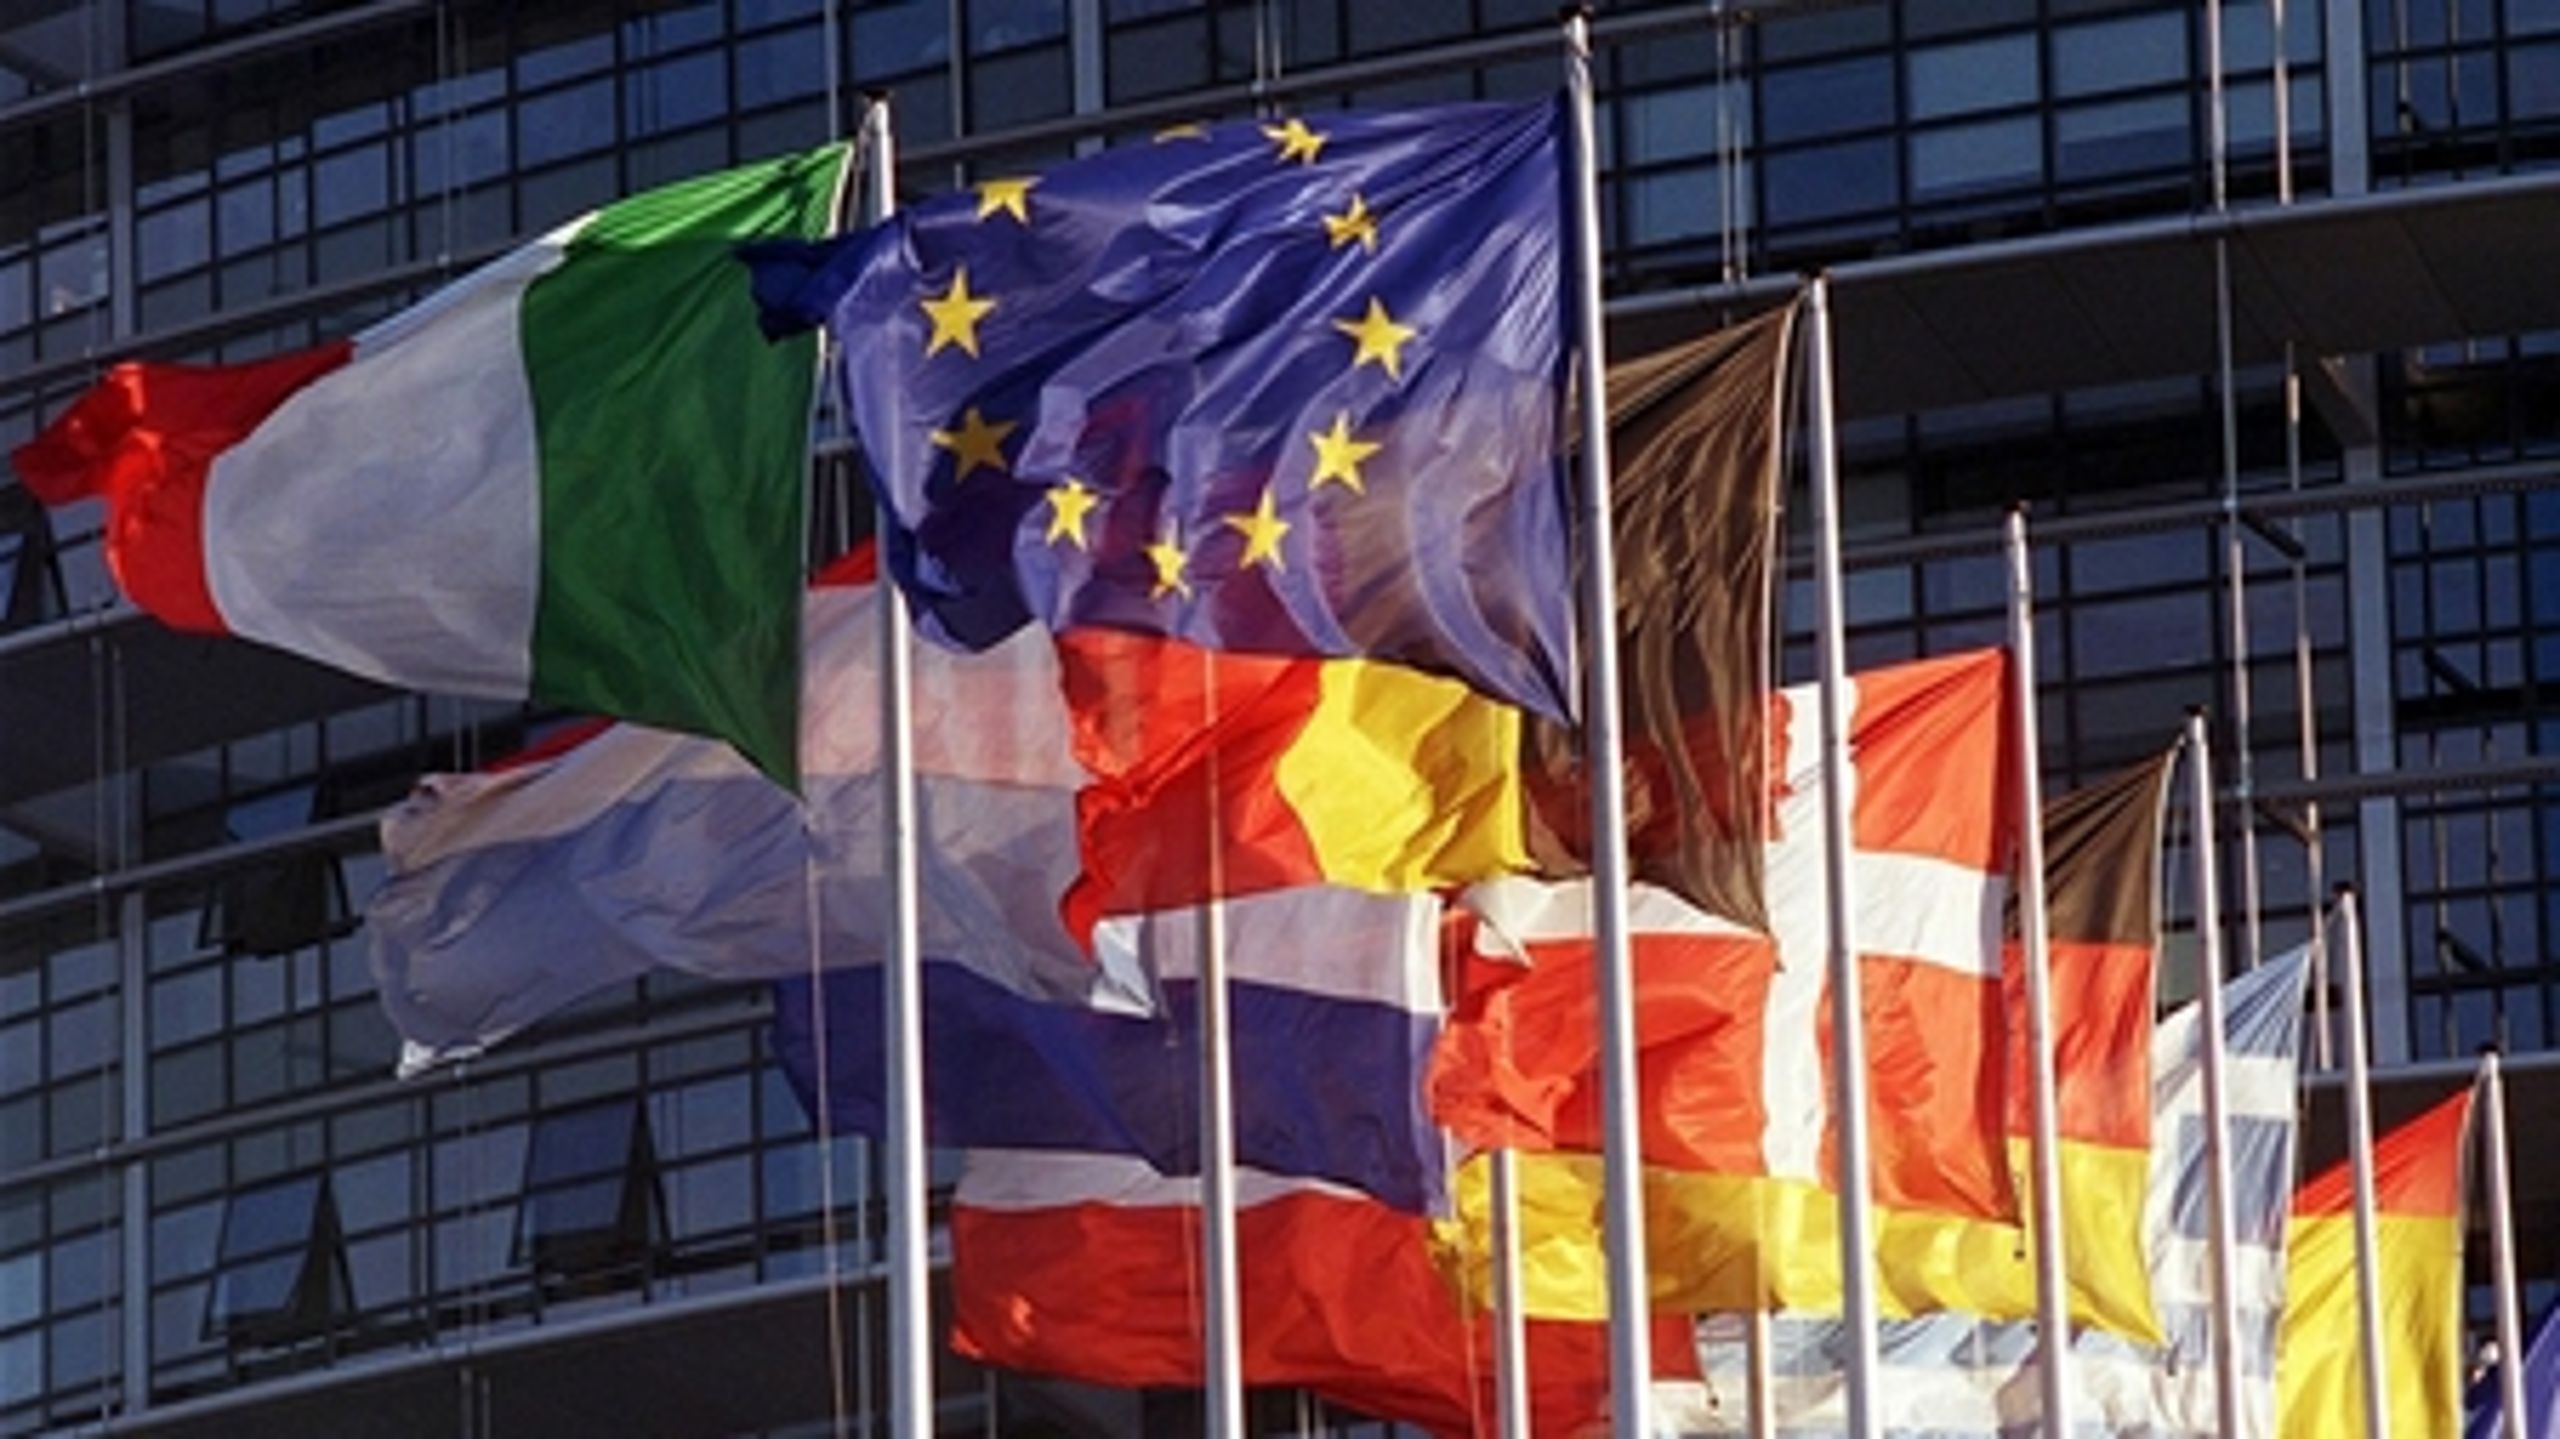 Irland har udvalgt fire fokusområder inden for forskning og innovation under sit EU-formandskab.